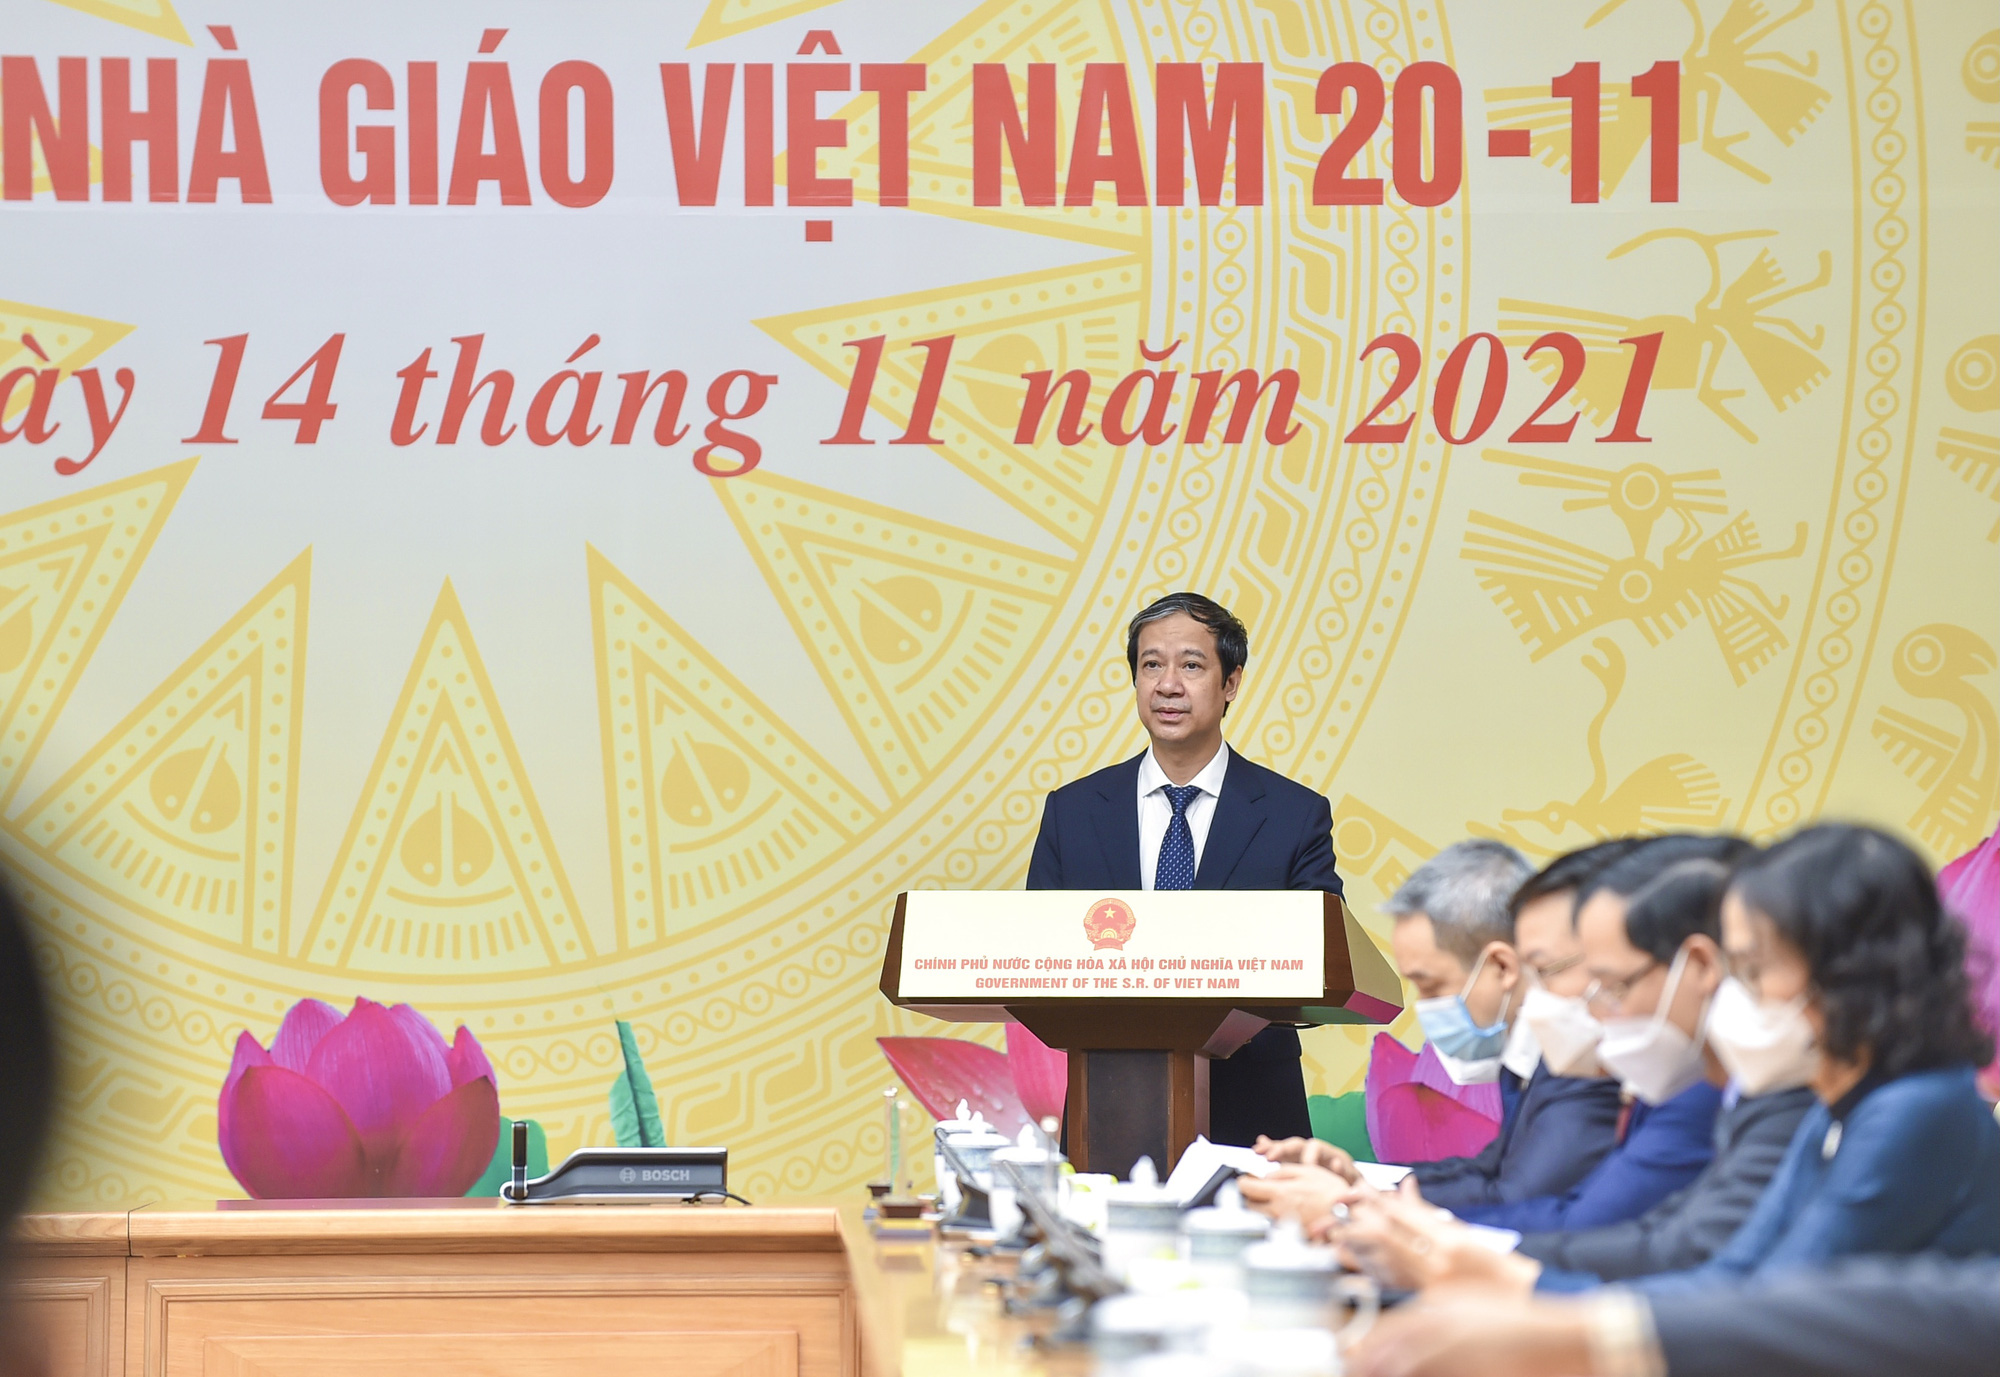 Thủ tướng Phạm Minh Chính gặp mặt đại diện nhà giáo, cán bộ quản lý giáo dục tiêu biểu nhân Ngày Nhà giáo Việt Nam 20/11 - Ảnh 2.